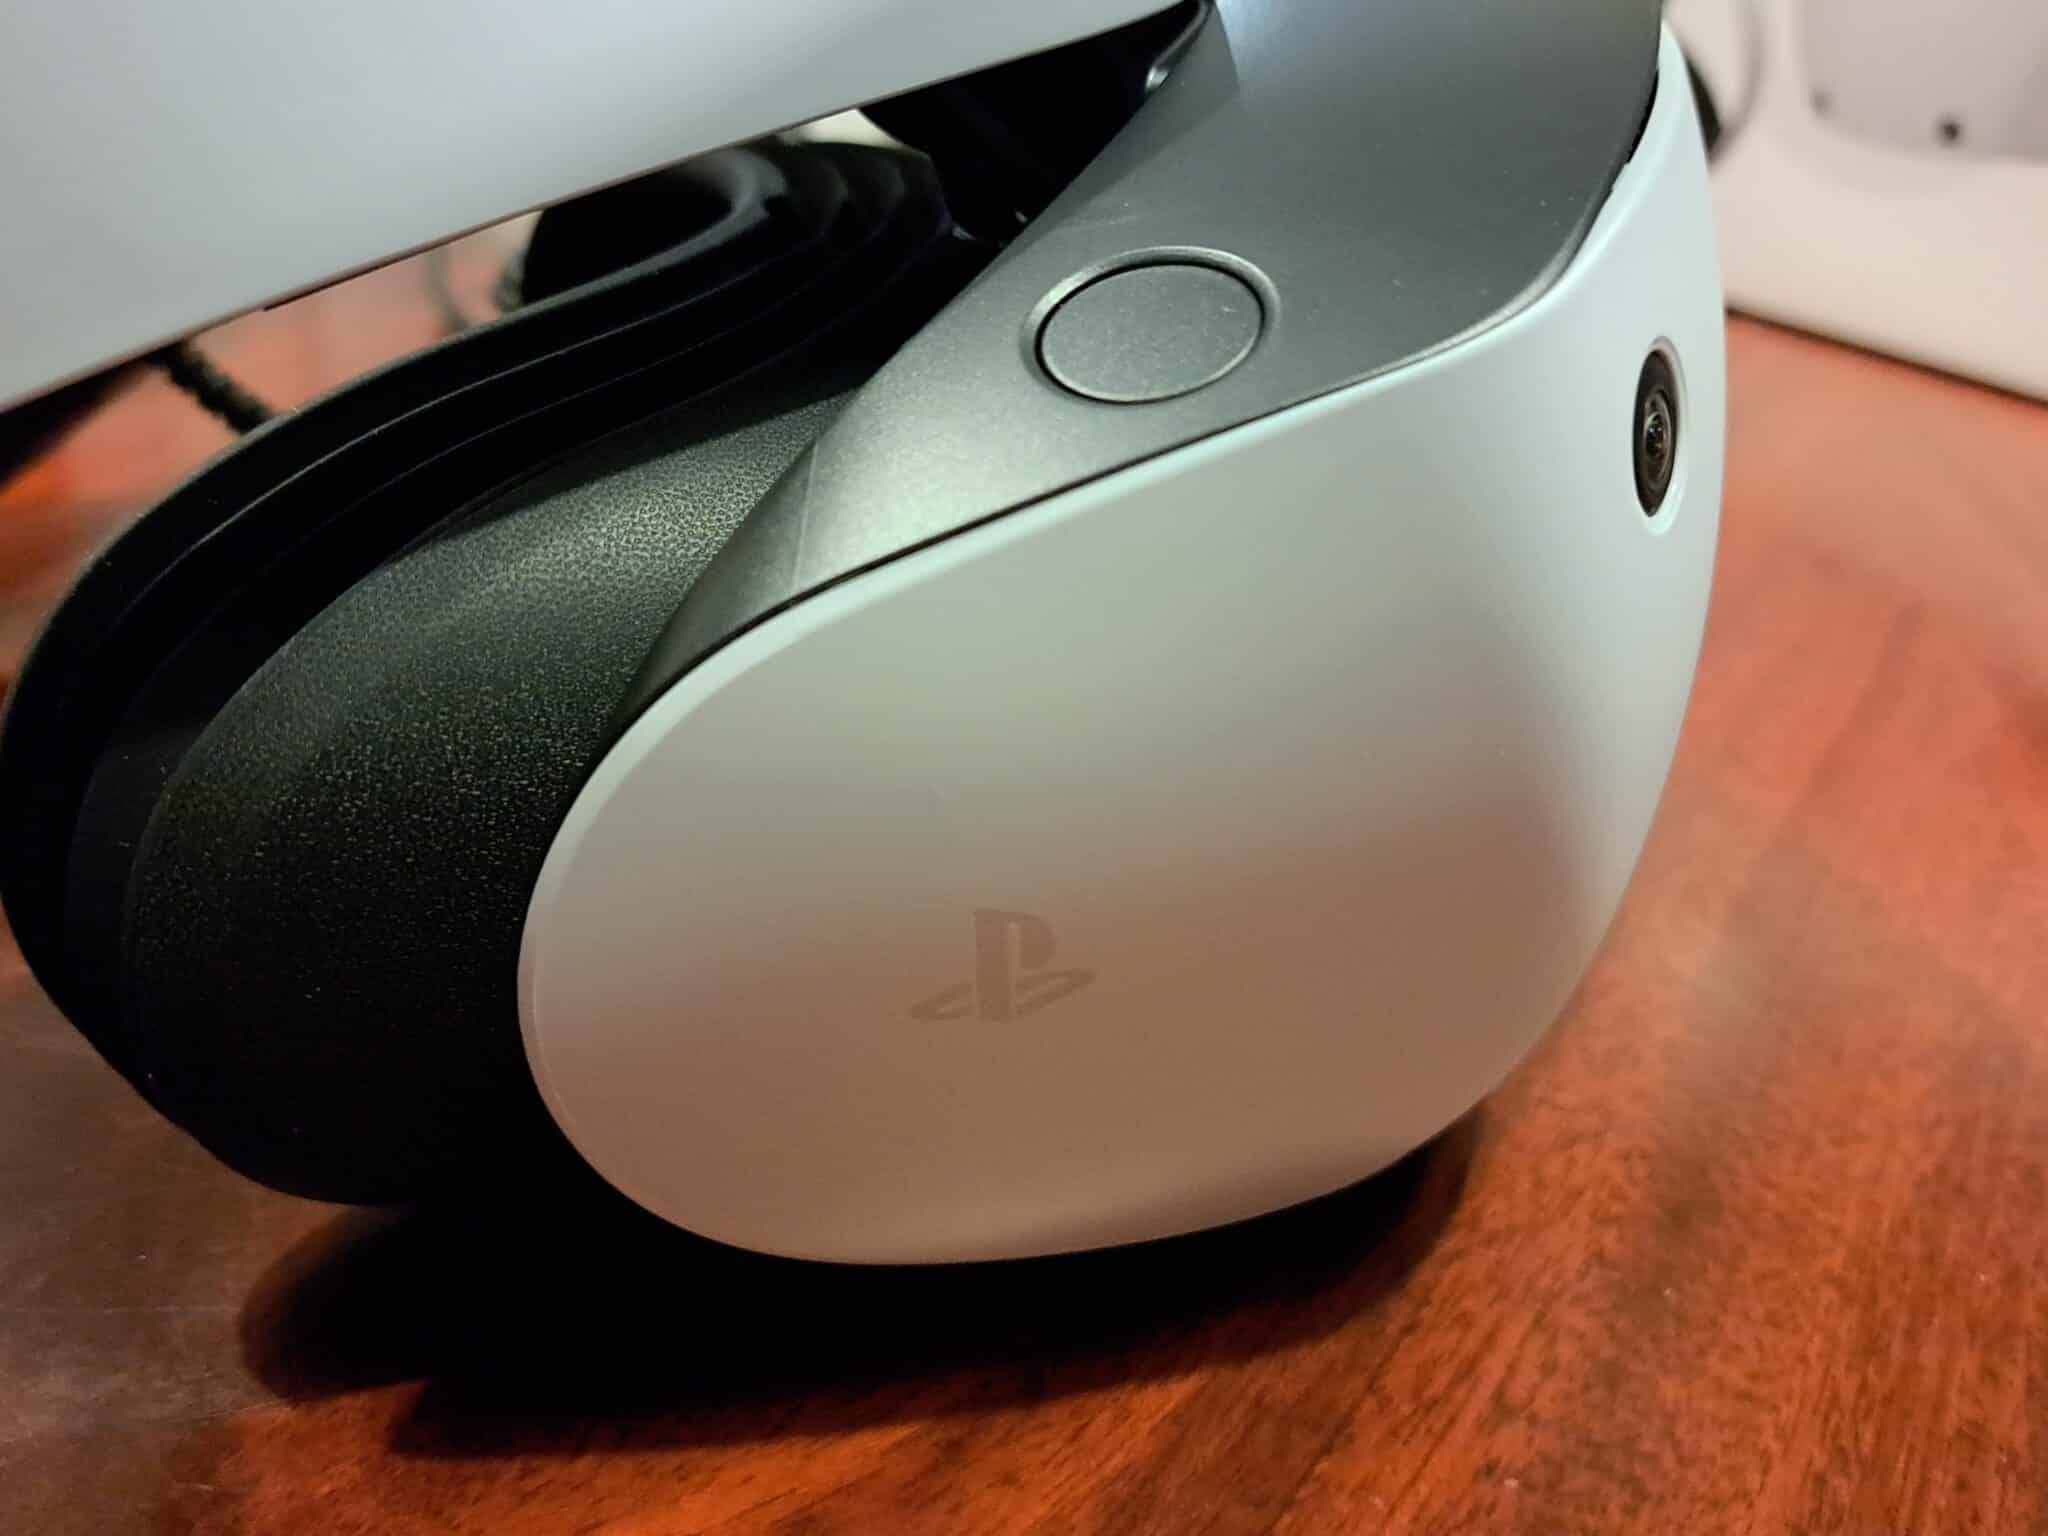 Prise de vue latérale du casque PlayStation VR2